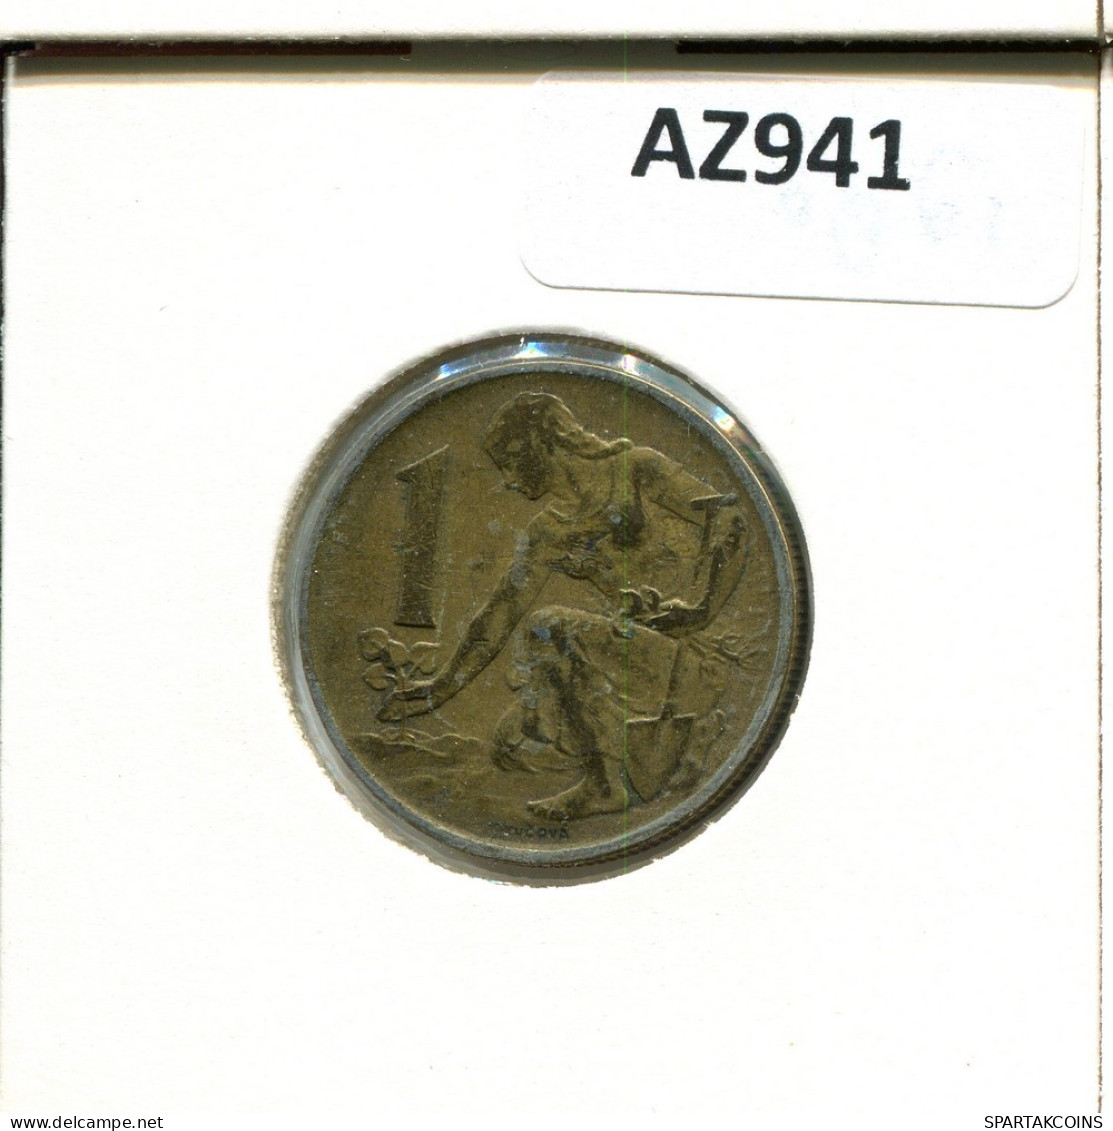 1 KORUNA 1980 CZECHOSLOVAKIA Coin #AZ941.U.A - Cecoslovacchia